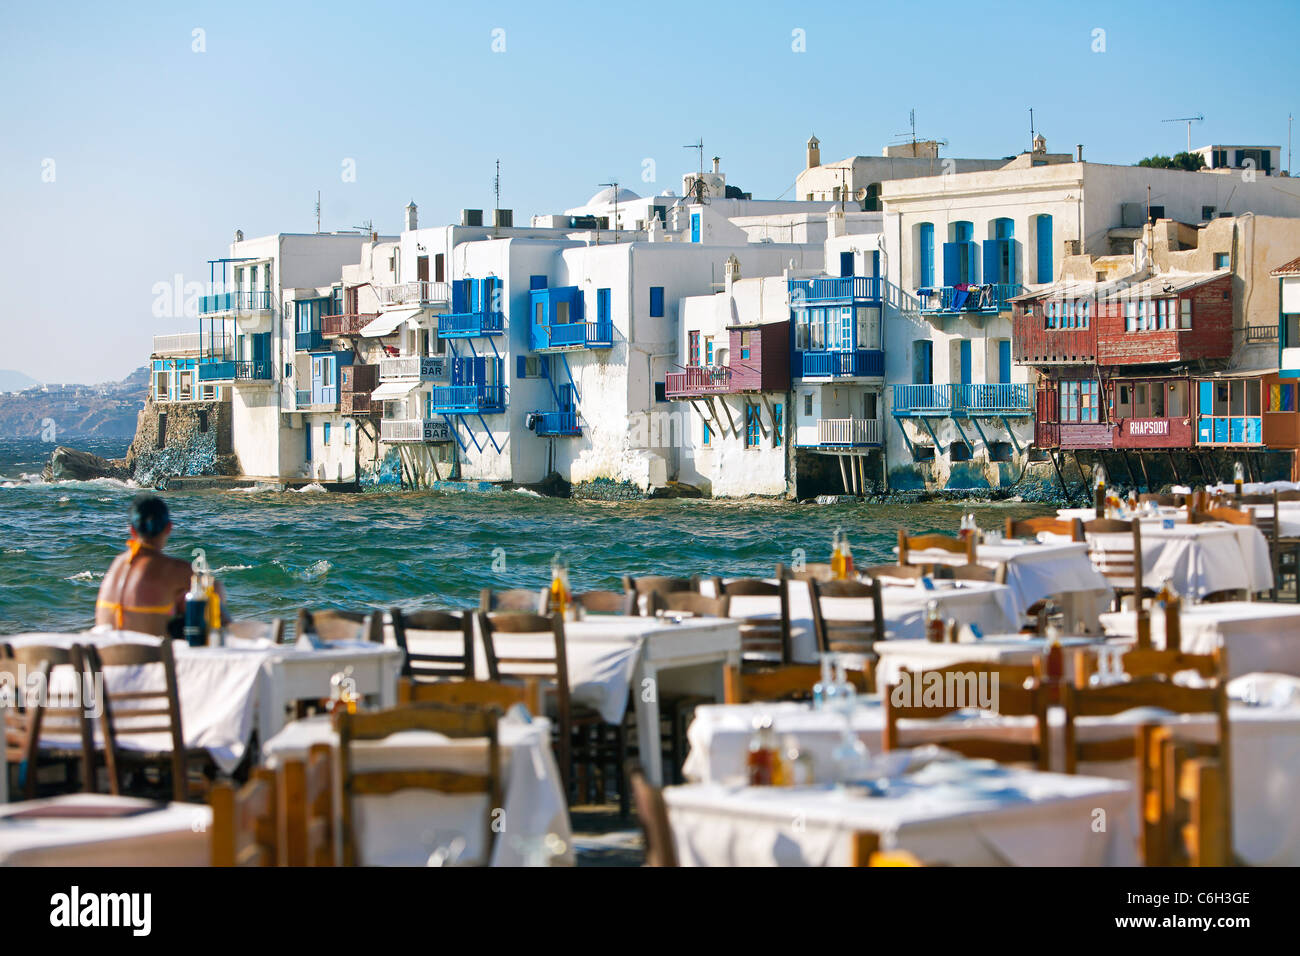 La petite Venise de Mykonos, au bord de l'eau (Hora), îles Cyclades, Grèce, Europe Banque D'Images